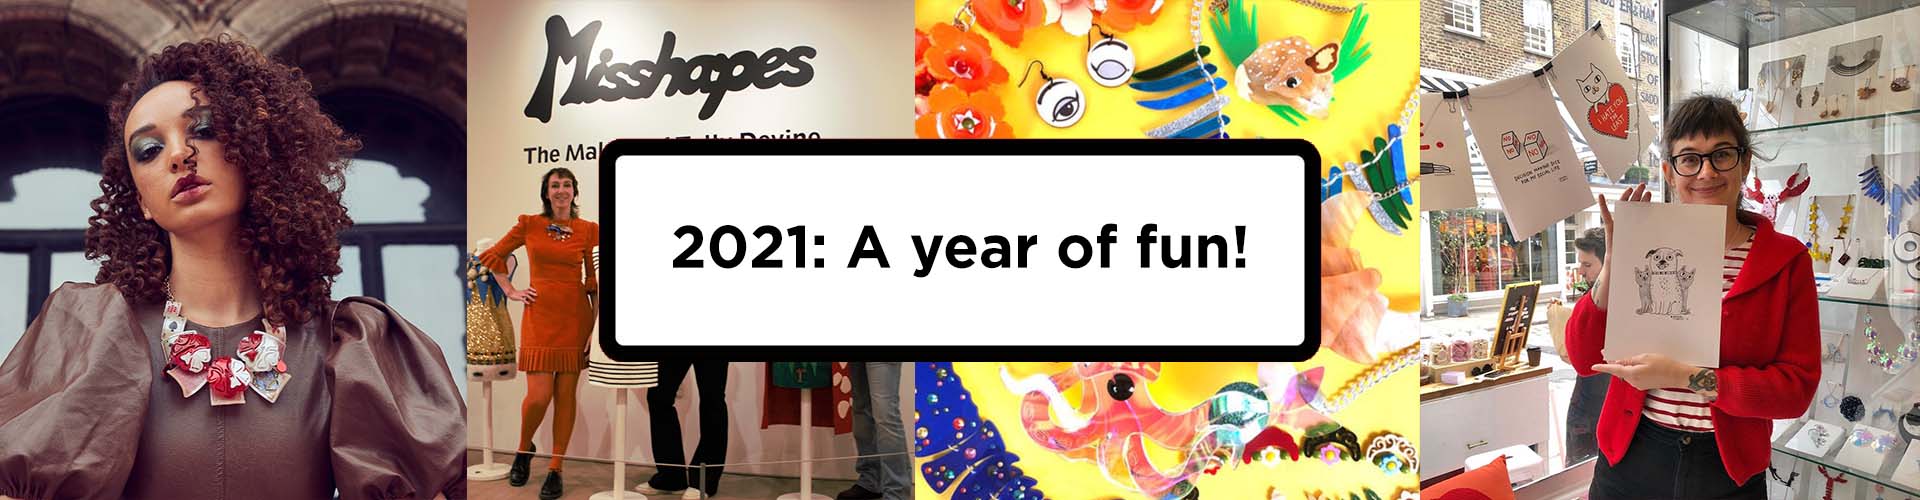 2021: A year of fun!